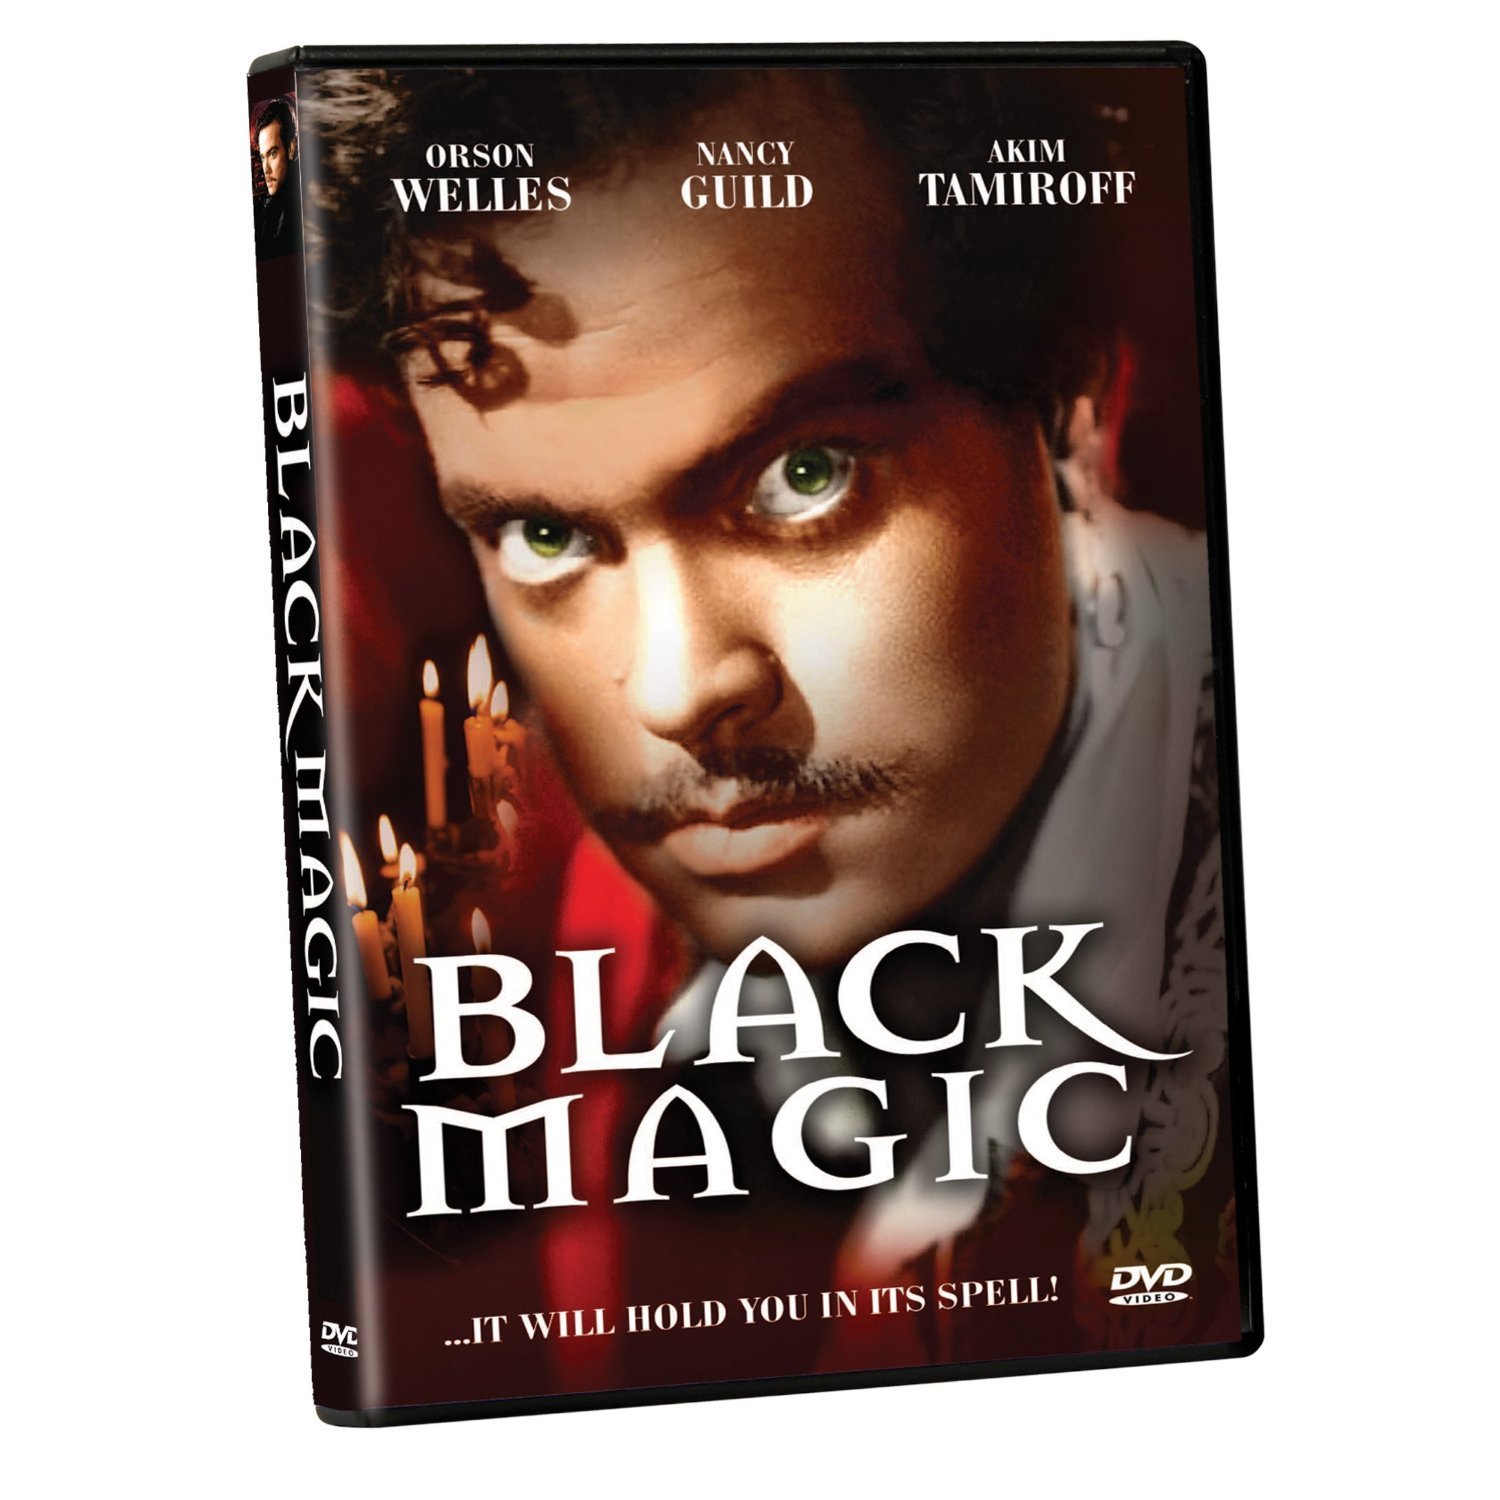 Black Magic Movie Poster